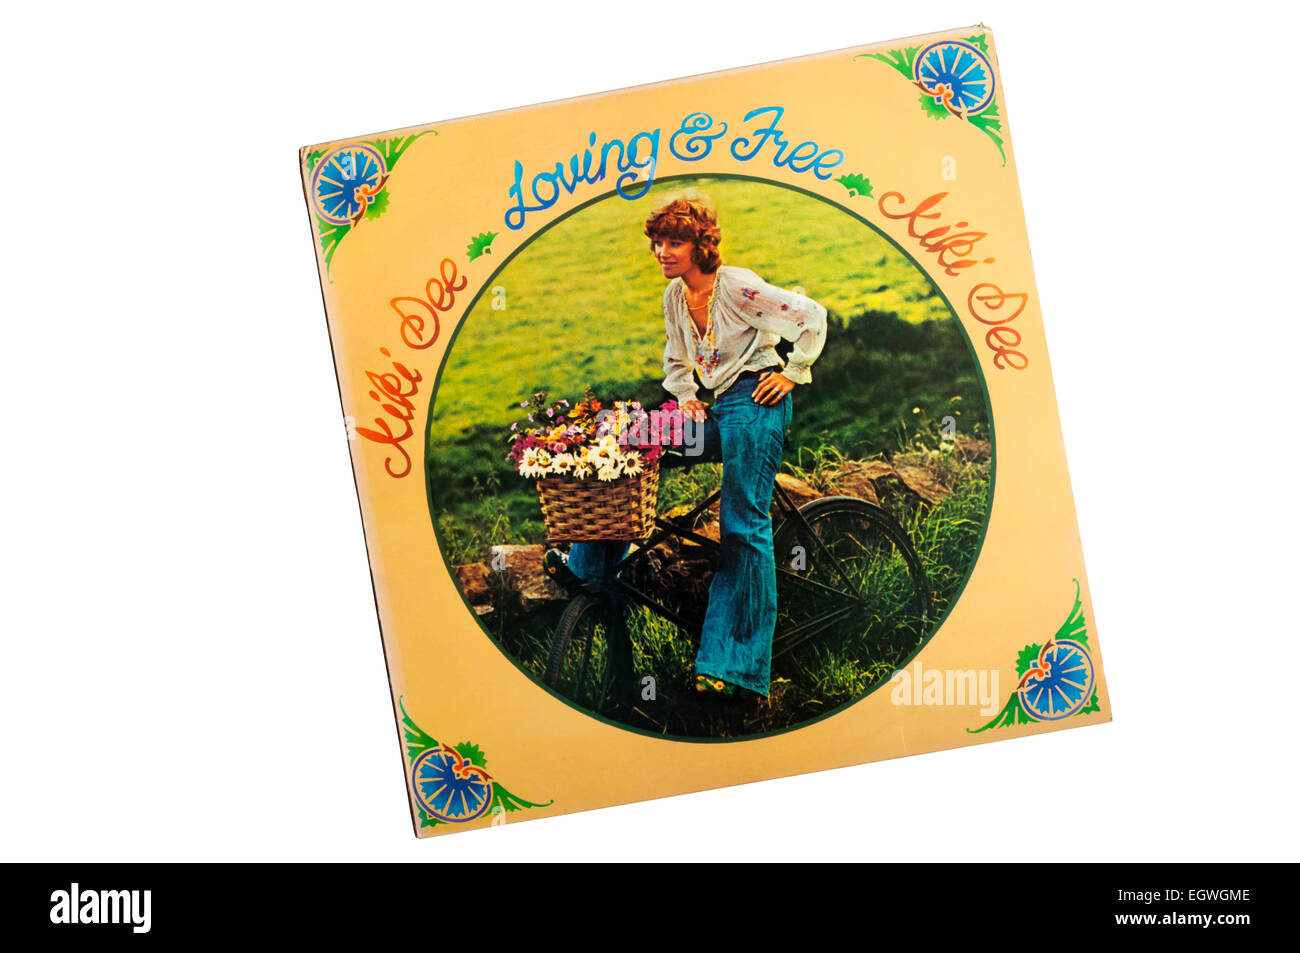 Amare & Free è il terzo album del cantante inglese Kiki Dee rilasciato nel 1973 sull'etichetta a razzo. Foto Stock